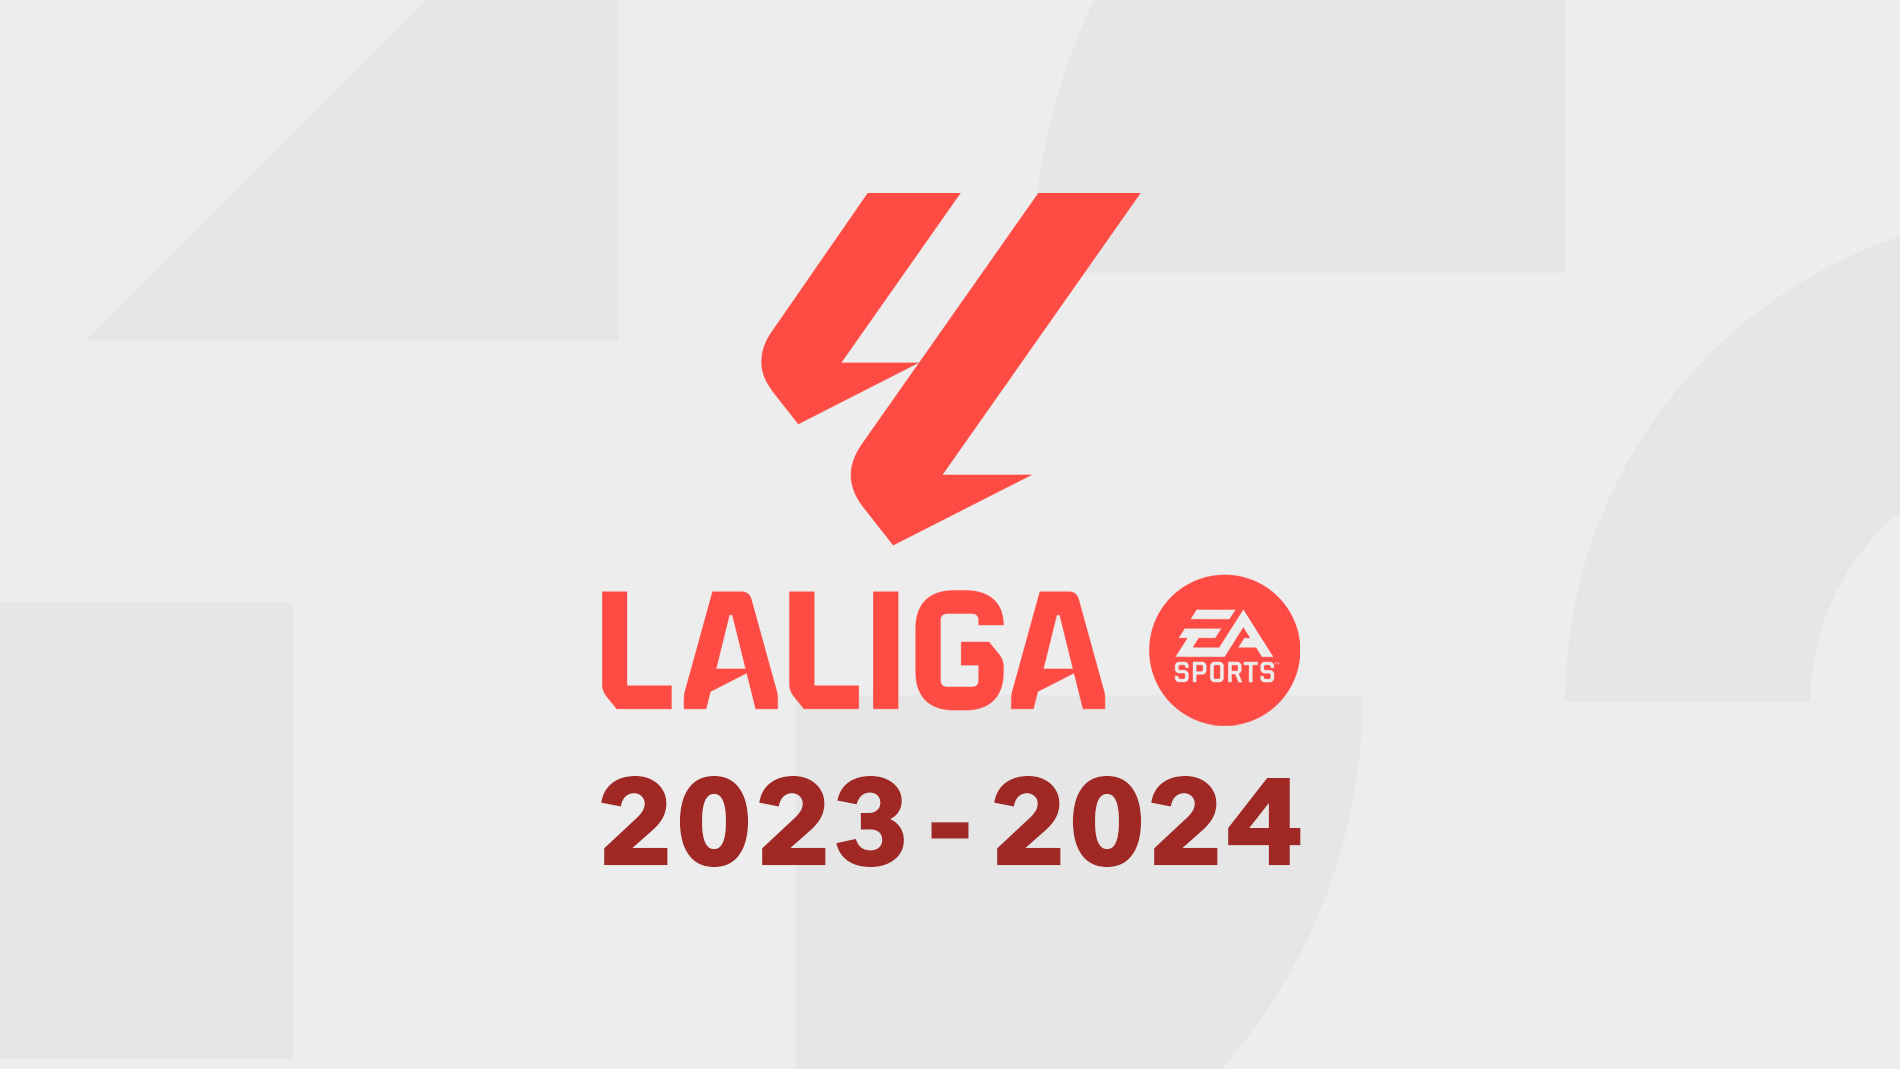 La Liga Season 2023-2024 - A complete guide.